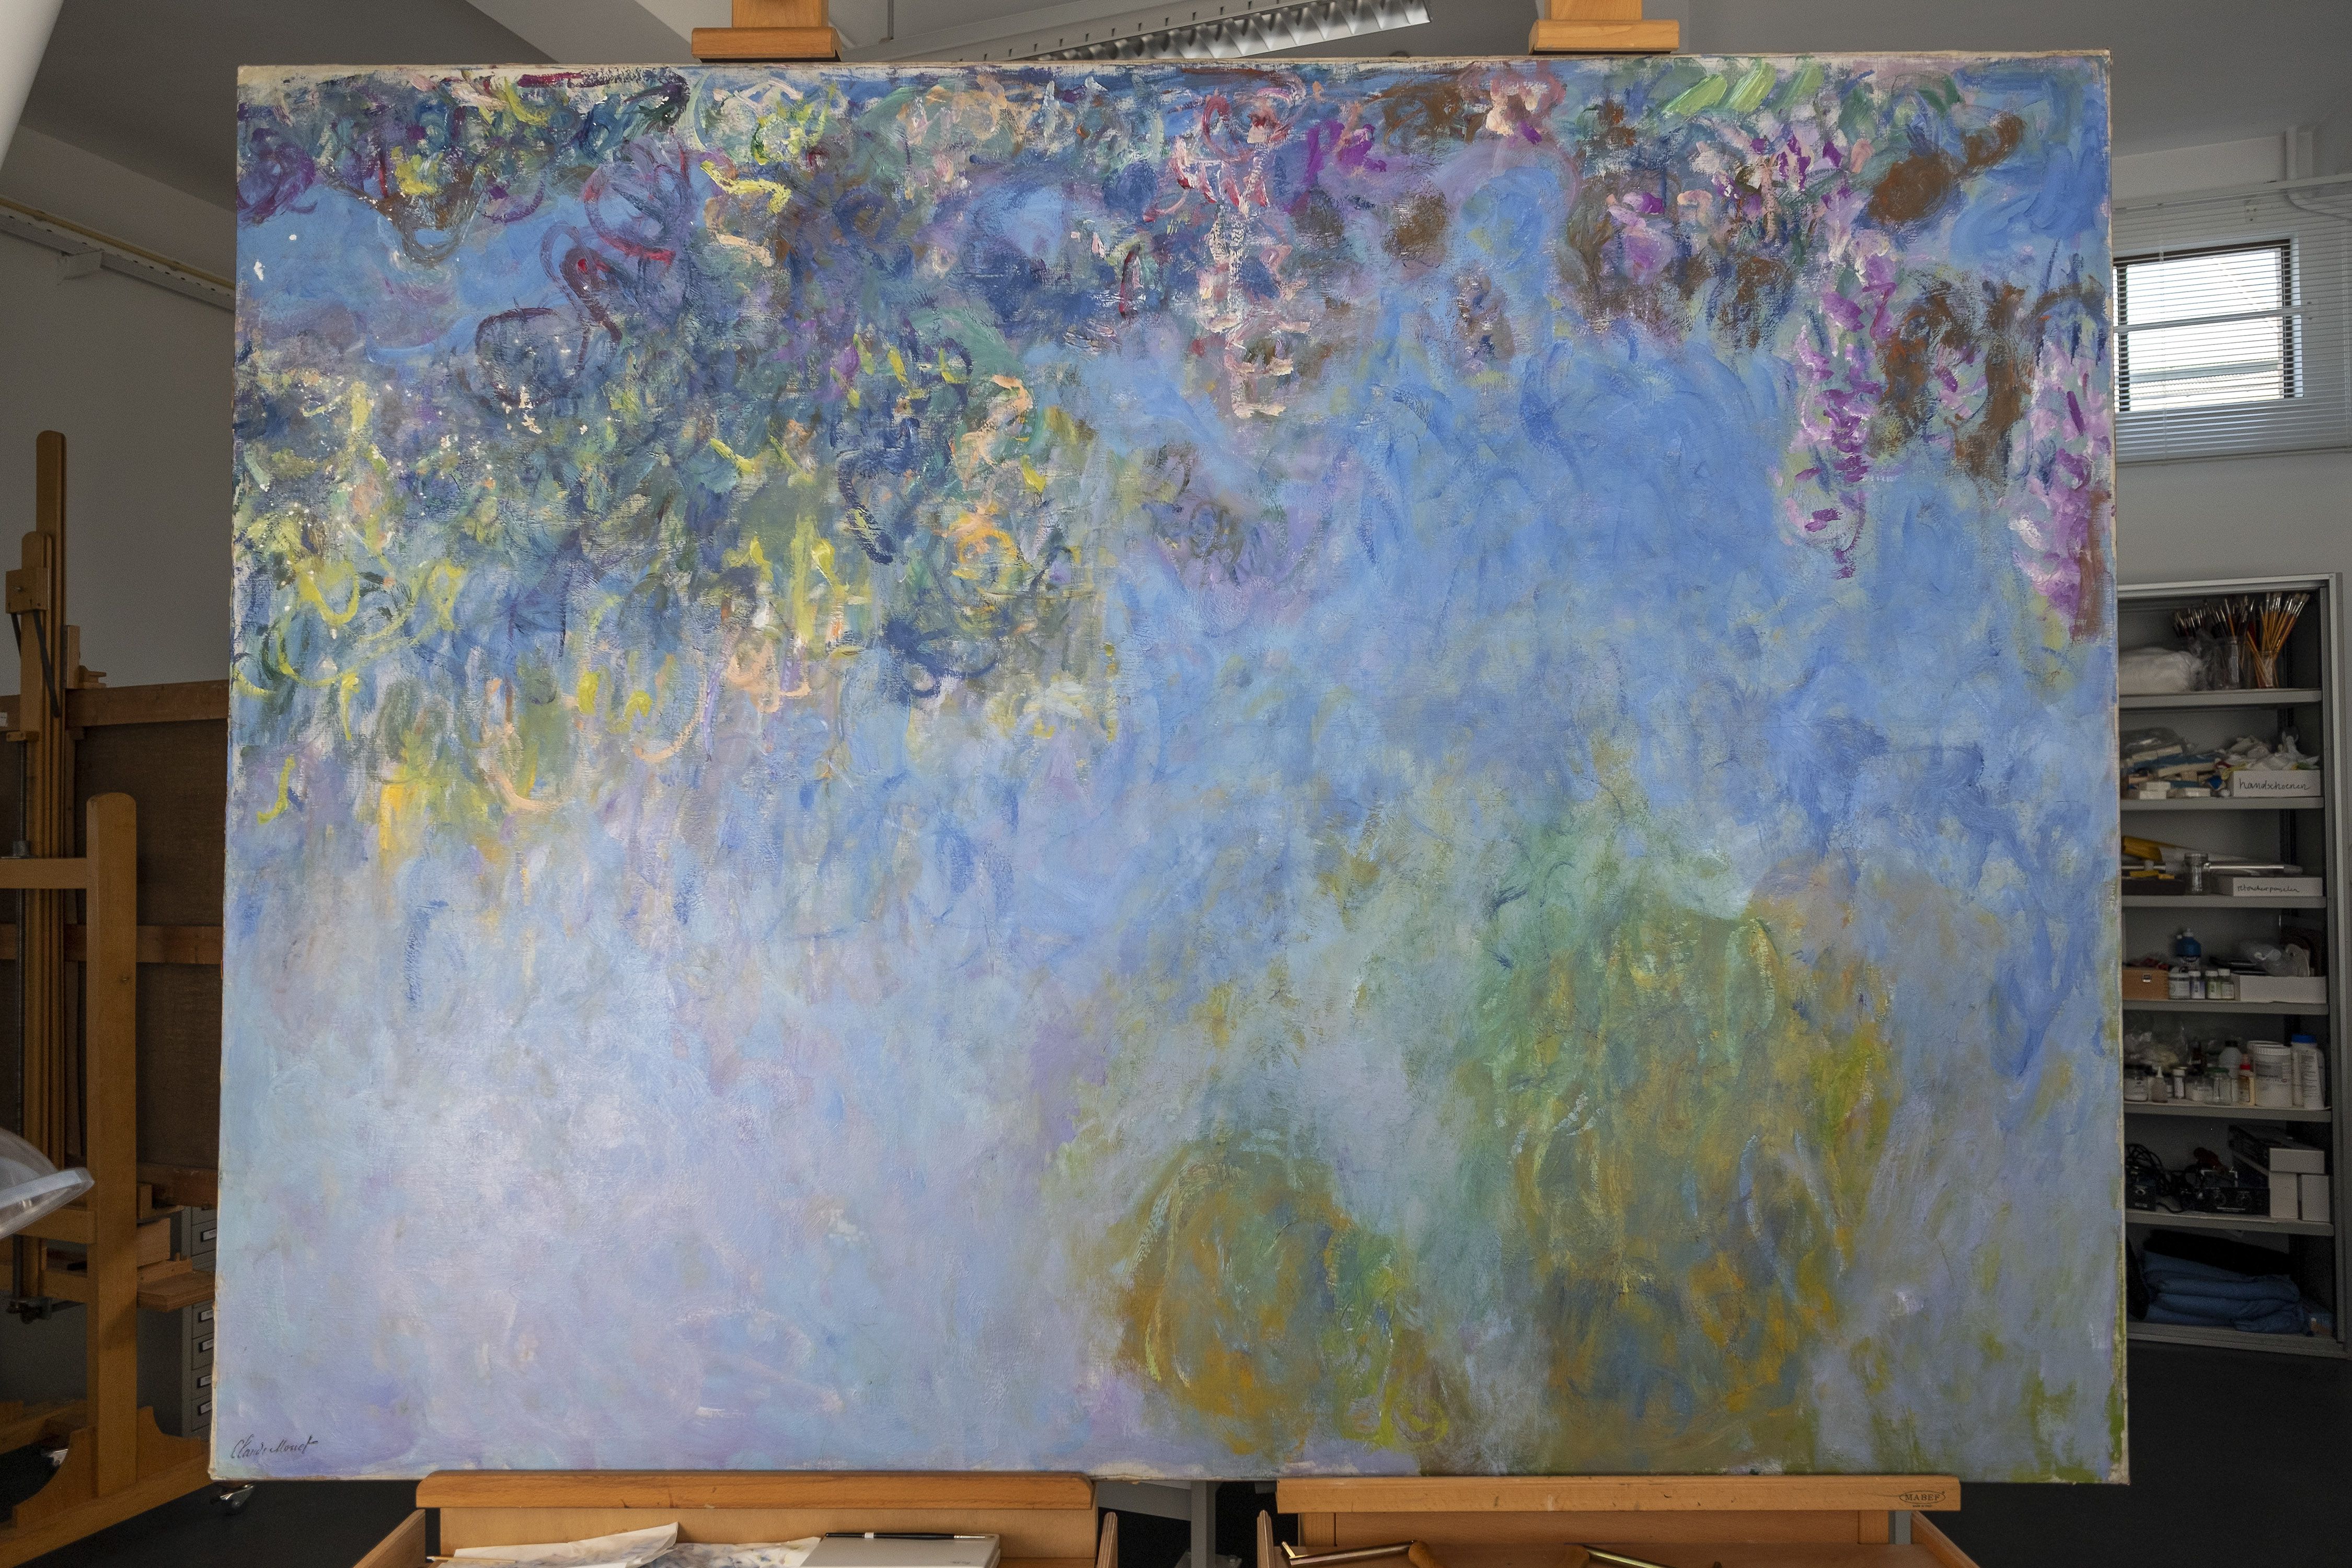 Se suponía que las pinturas de glicinias de la serie “Wisteria” de Monet serían la joya de la corona para una instalación enorme y continua de nenúfares. Sin embargo, cuando fueron donados al Estado francés en 1927, no fueron exhibidas como Monet lo había concebido. (Herman Wouters/The New York Times)